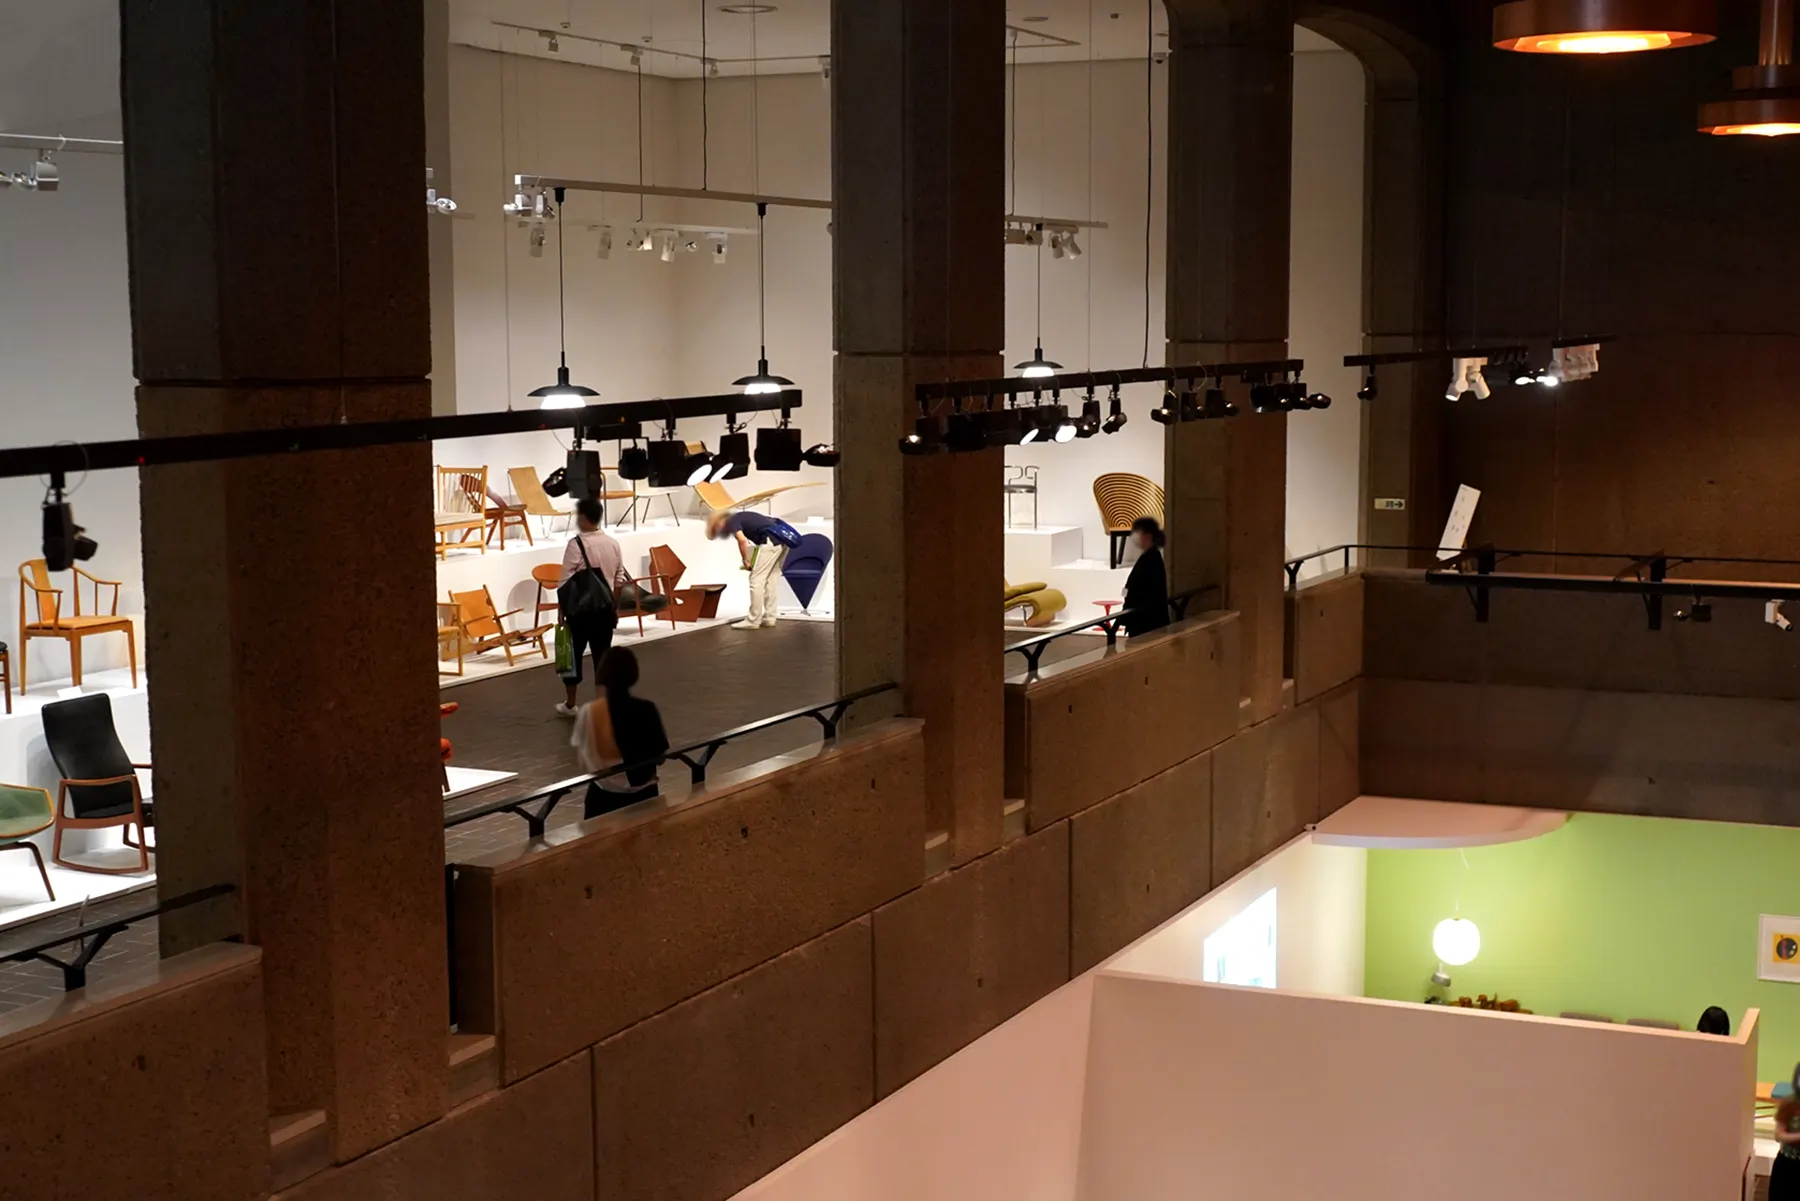 東京都美術館 企画展「フィン・ユールとデンマークの椅子」会場の様子